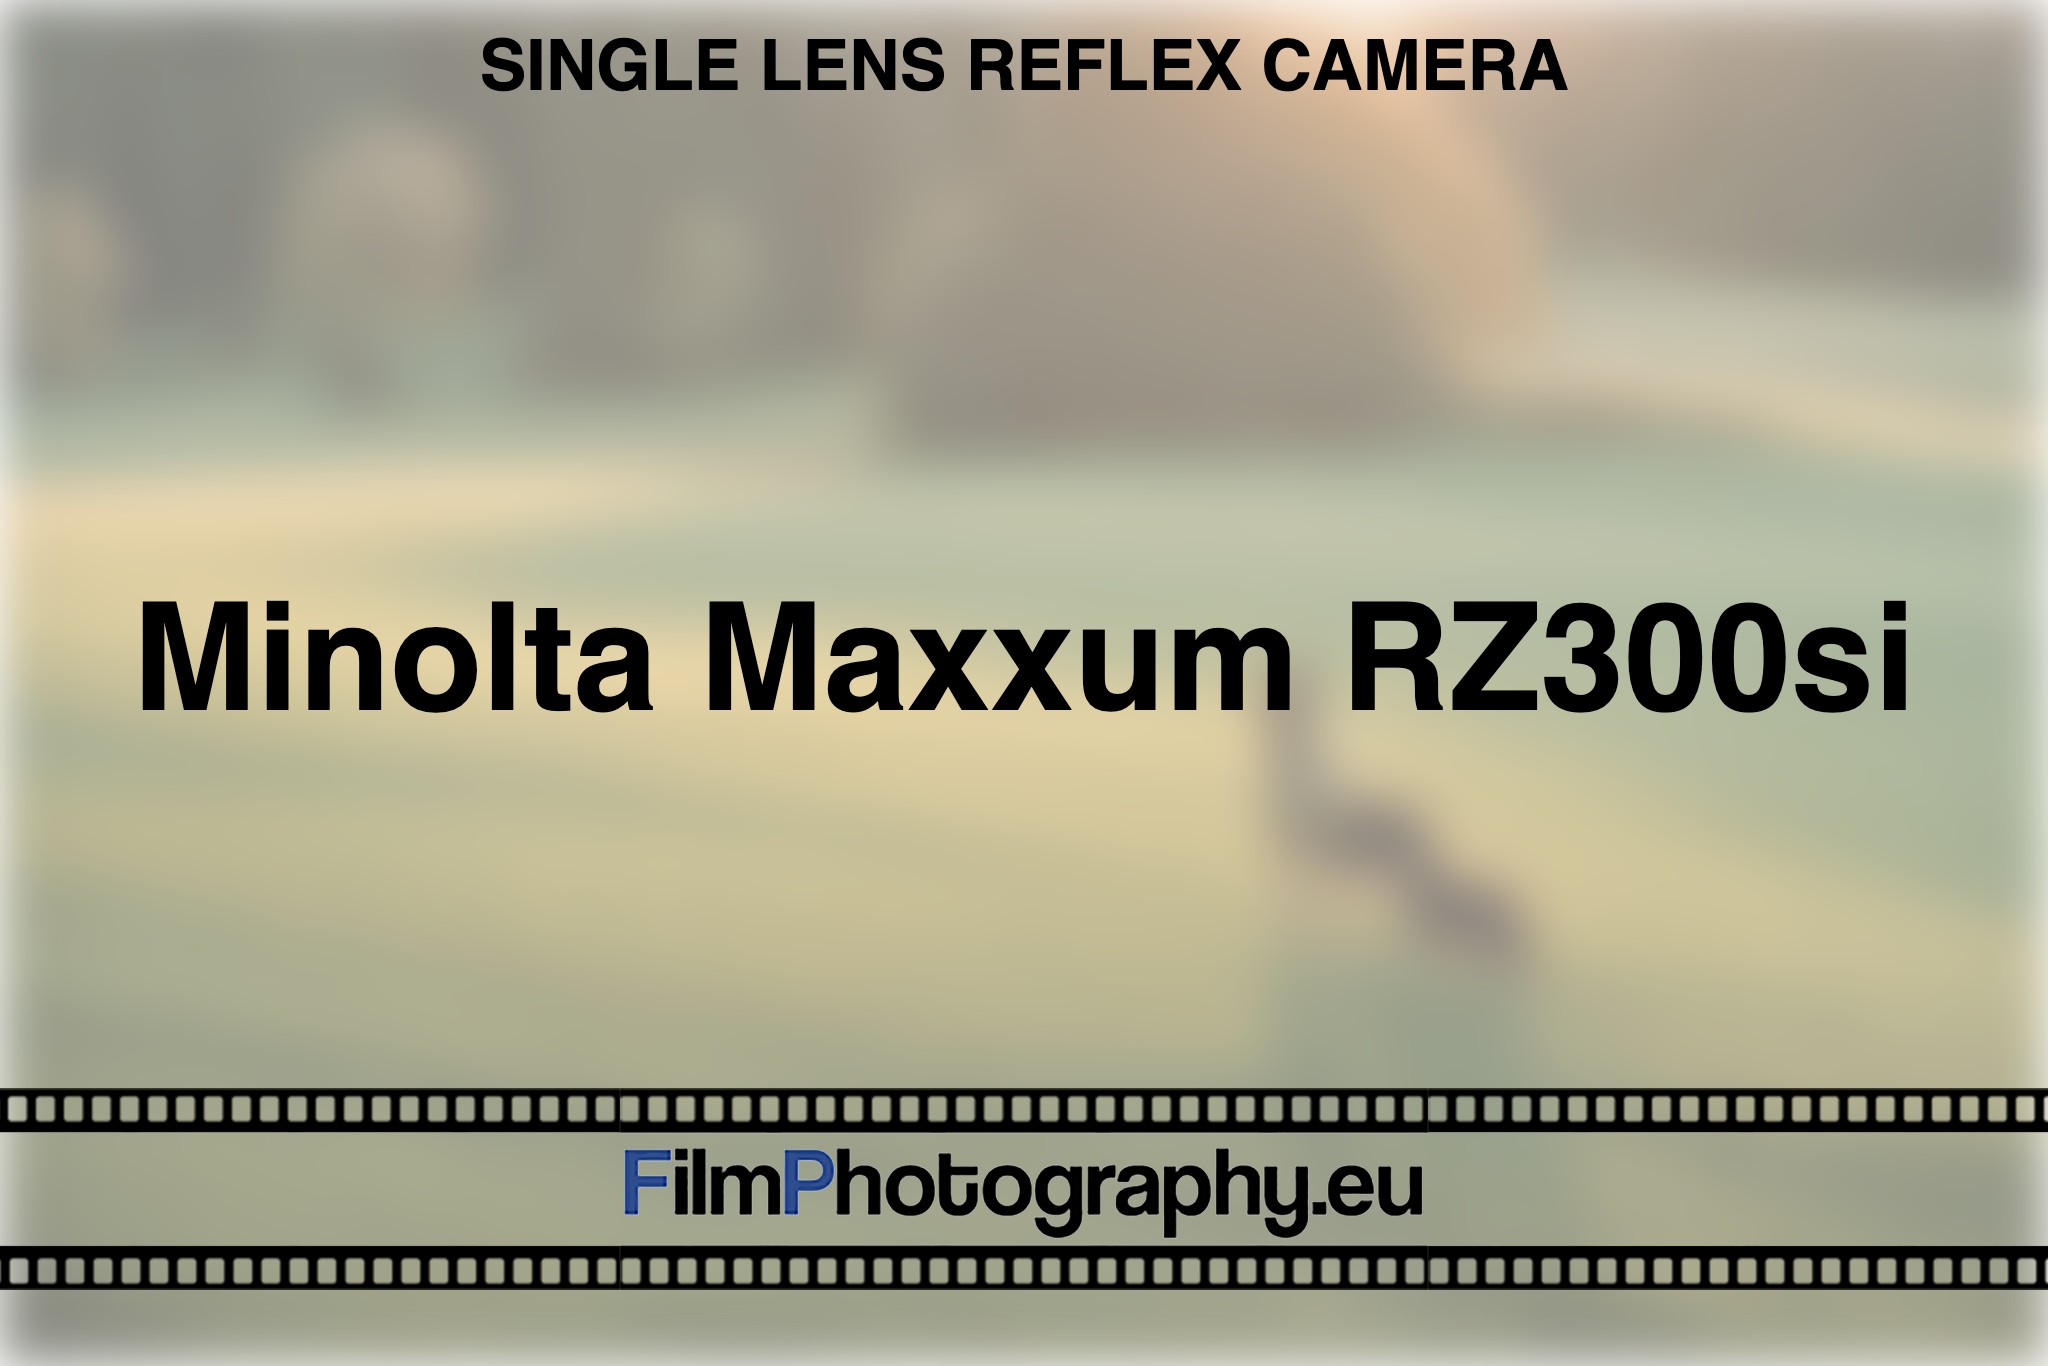 minolta-maxxum-rz300si-single-lens-reflex-camera-bnv